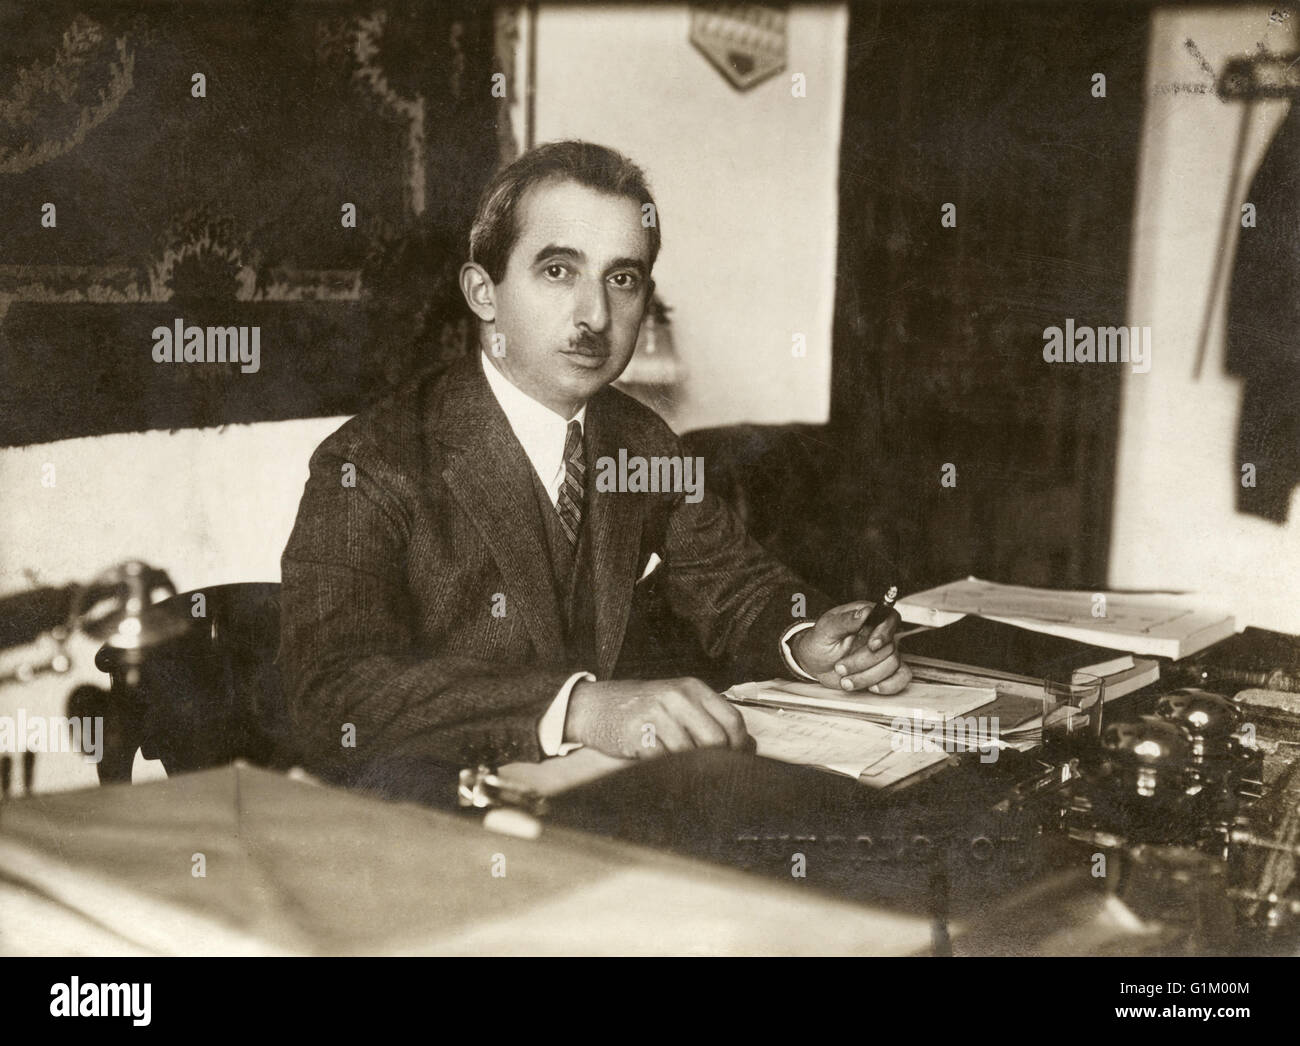 ISMET INÖNÜ (1884-1973).  Auch bekannt als Ismet Pascha. Türkischer Politiker, Staatspräsident der Türkei, 1938-1950. Fotografiert während seiner Amtszeit als Premierminister, 1928. Stockfoto